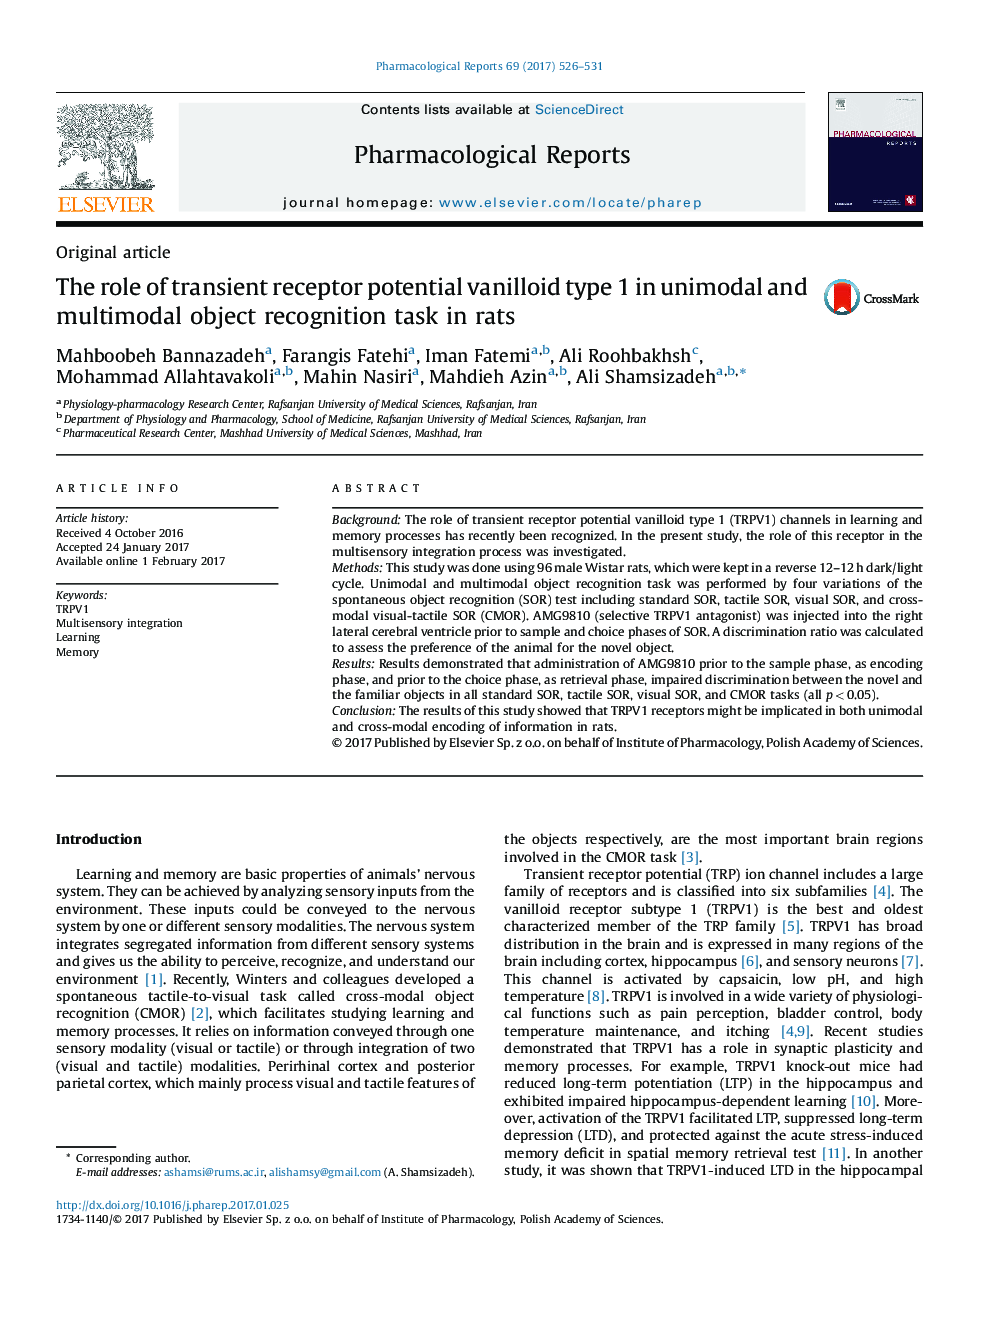 مقاله اصلی نقش نوع بالقوه گیرنده گذرا وانولیوئید 1 در کارکردهای تشخیص شیوه ی متحرک و چندبعدی در موش صحرایی 